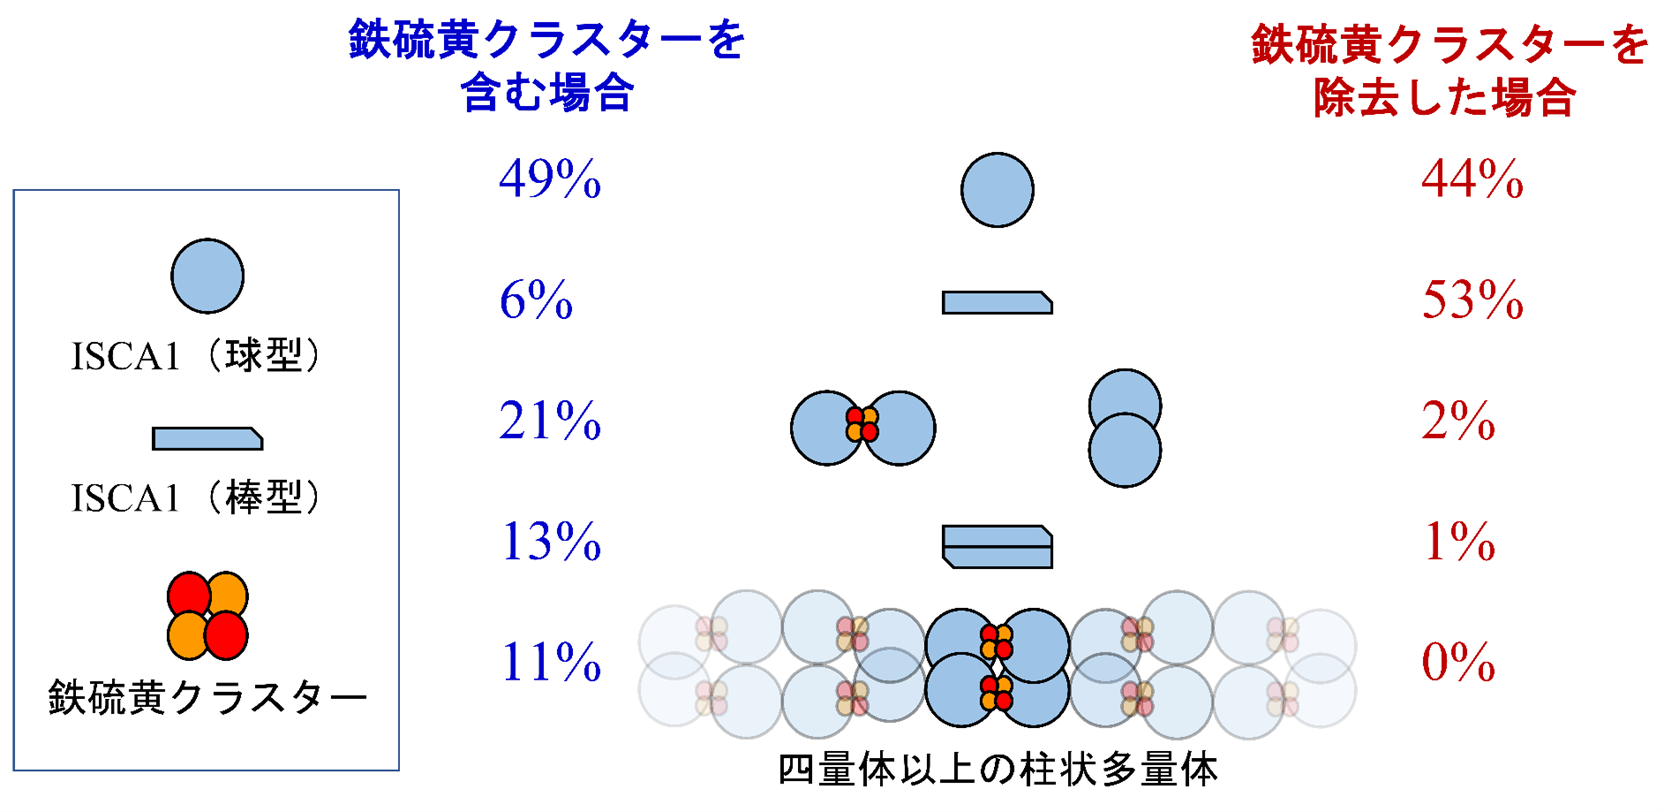 図3　1 mg/mLのISCA1溶液を用いて、人工的な磁場を印加しない自然な状態で観測された、ISCA1の構造(図中央)とそれらが含まれる割合(左右の数値)。鉄硫黄クラスターを含む生体内の環境に似た溶液中の場合(左)では、柱状多量体が11%存在すると見積も